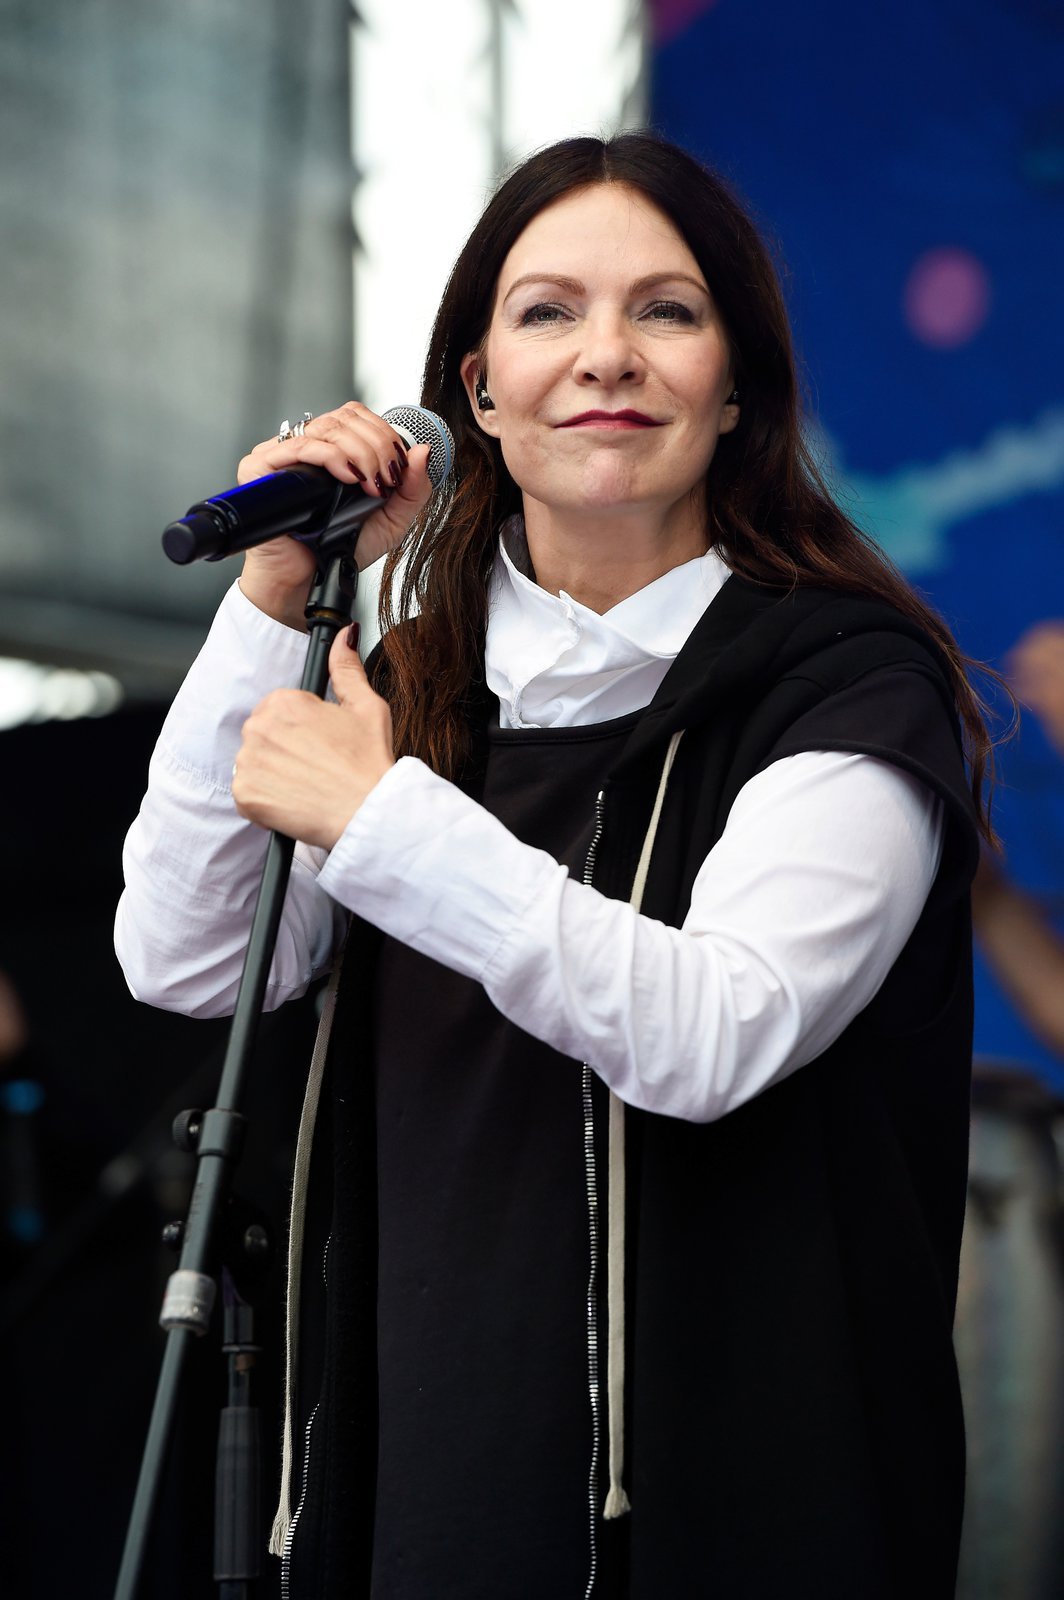 Anna K. během vystoupení na festivalu Hrady.cz